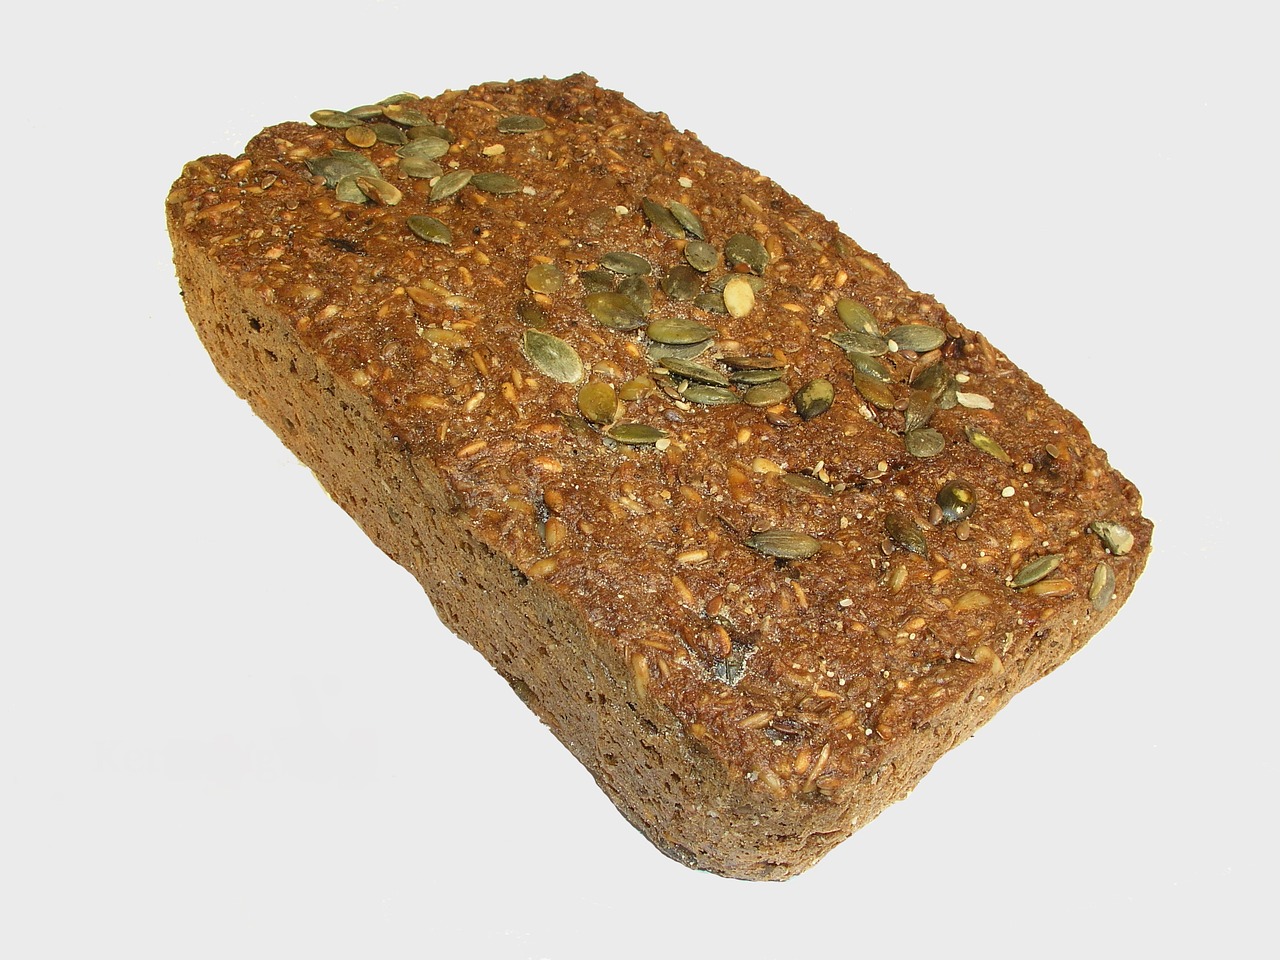 Image - core rye bread bread rye bread food